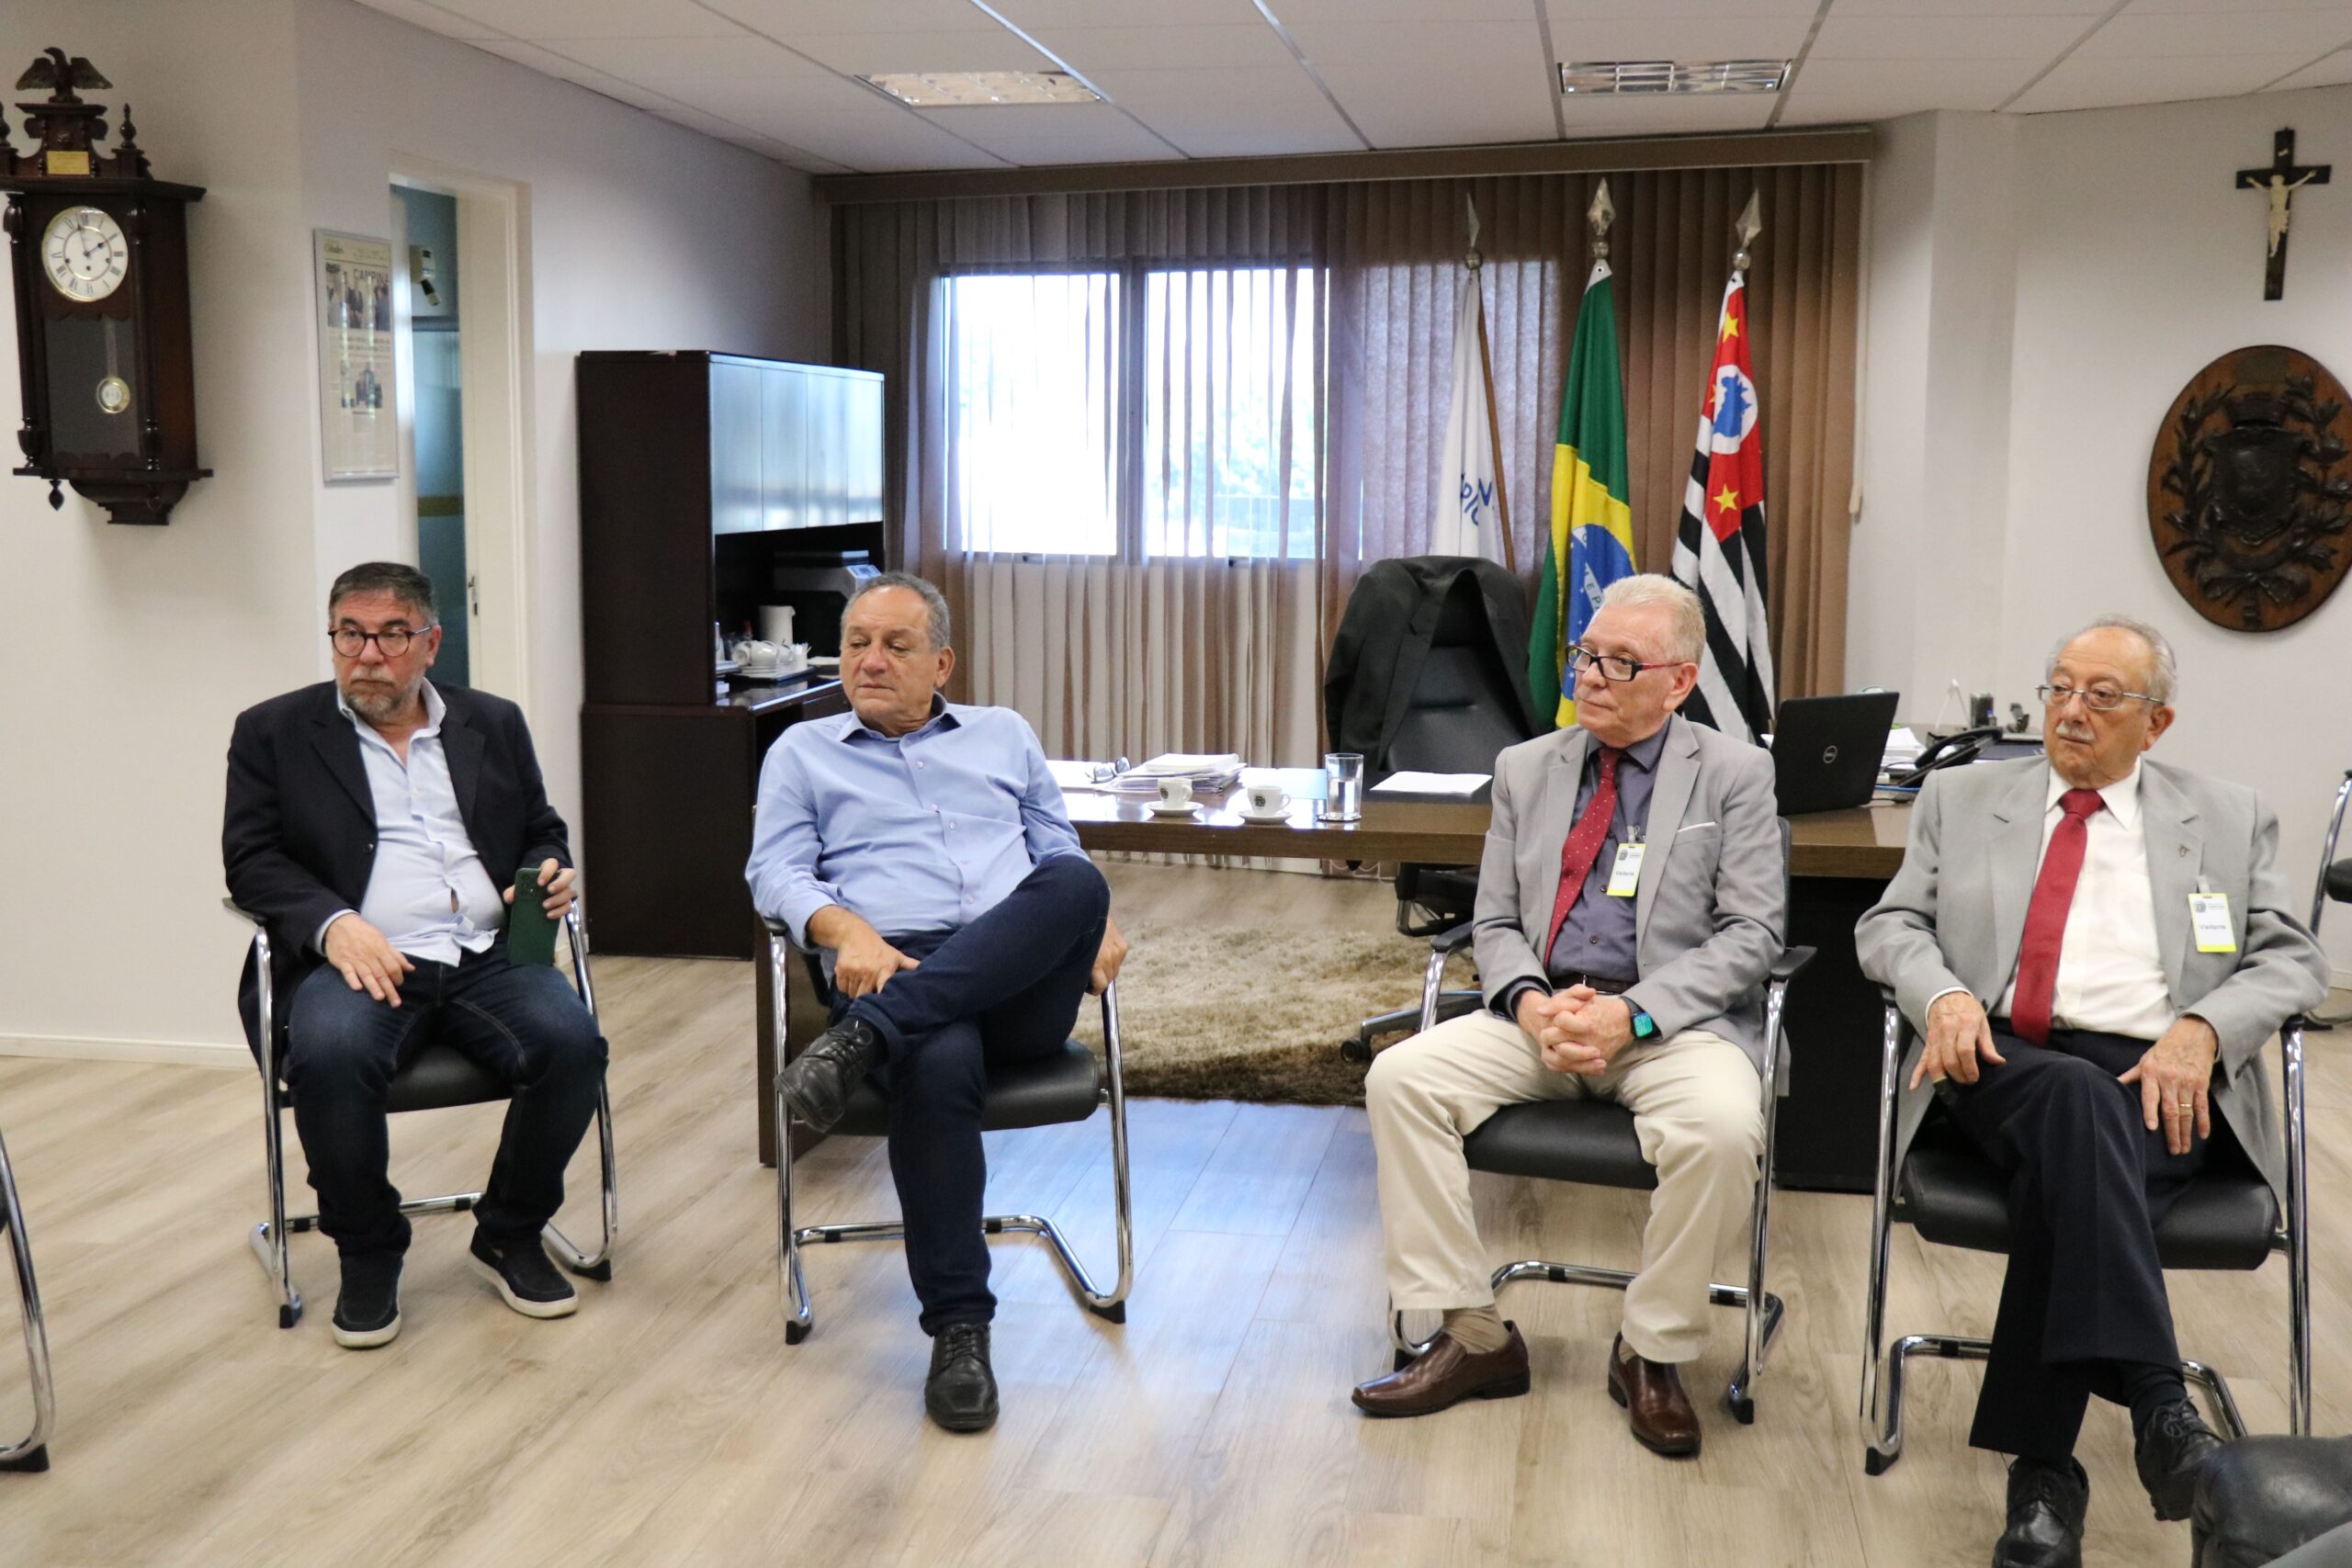 Na foto aparecem quatro homens com roupas sociais sentados em cadeiras em uma sala ampla com as bandeiras do Brasil, do estado de São Paulo e do município de Campinas. Trata-se do presidente da Câmara Municipal de Campinas e de seu assessor, além do presidente do CRMV-SP e do representante regional. Eles estão no gabinete do vereador.